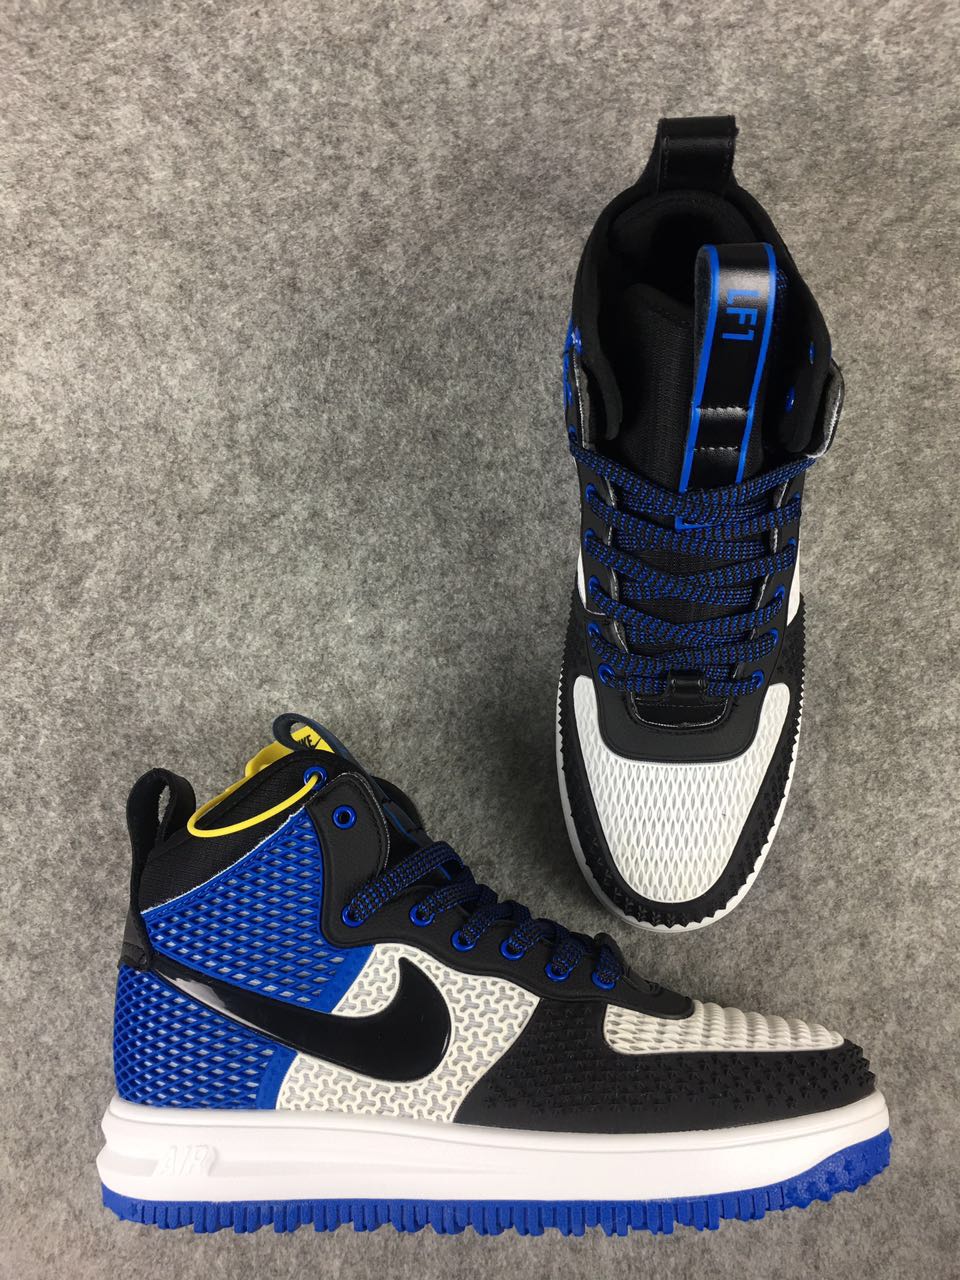 Nike Lunar Force 1 Nano Black Royal Blue White Shoes